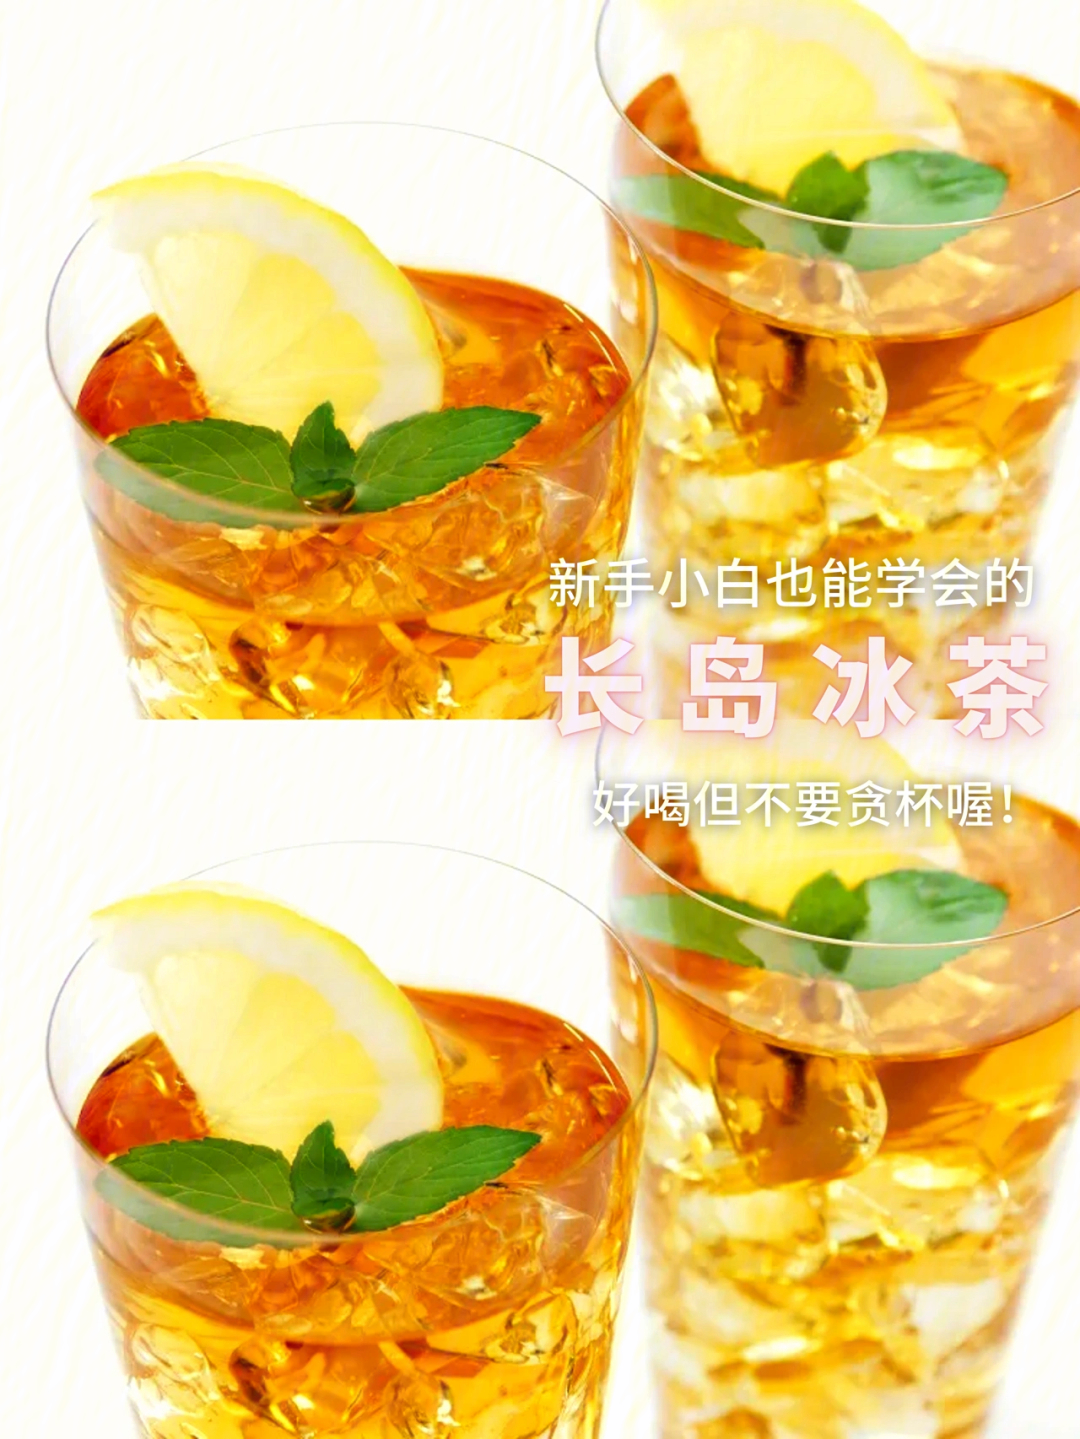 长岛冰茶(long island iced tea)是由伏特加,朗姆酒,金酒,龙舌兰酒这